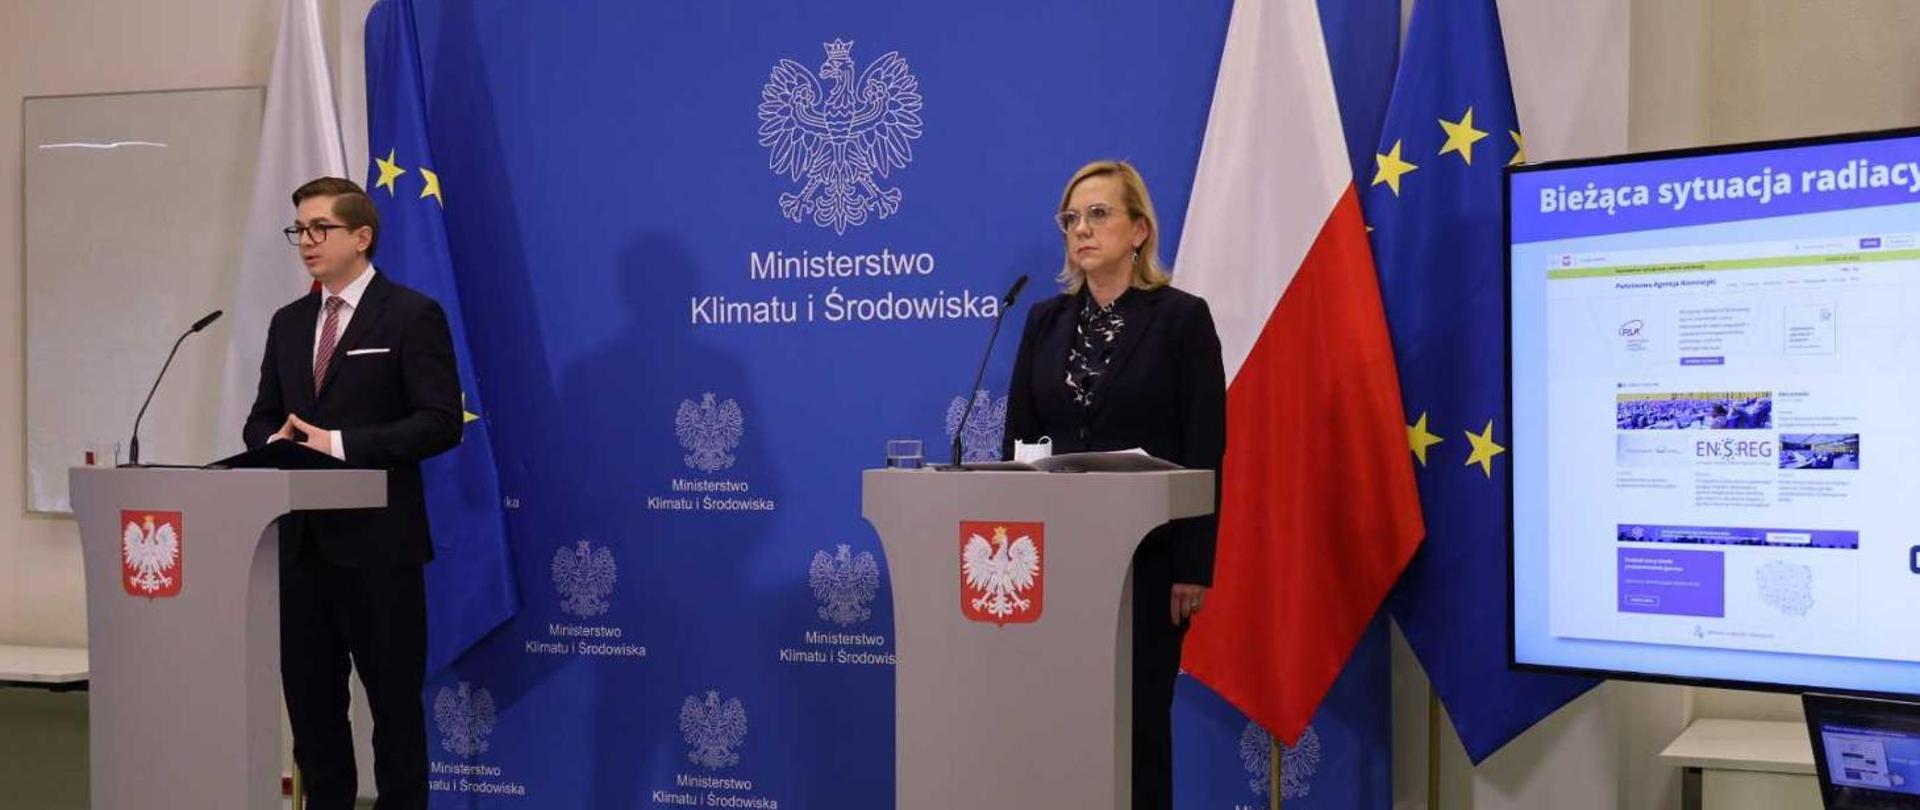 Minister Anna Moskwa: Nie ma zagrożenia w związku z sytuacją w Elektrowni Jądrowej Zaporoże